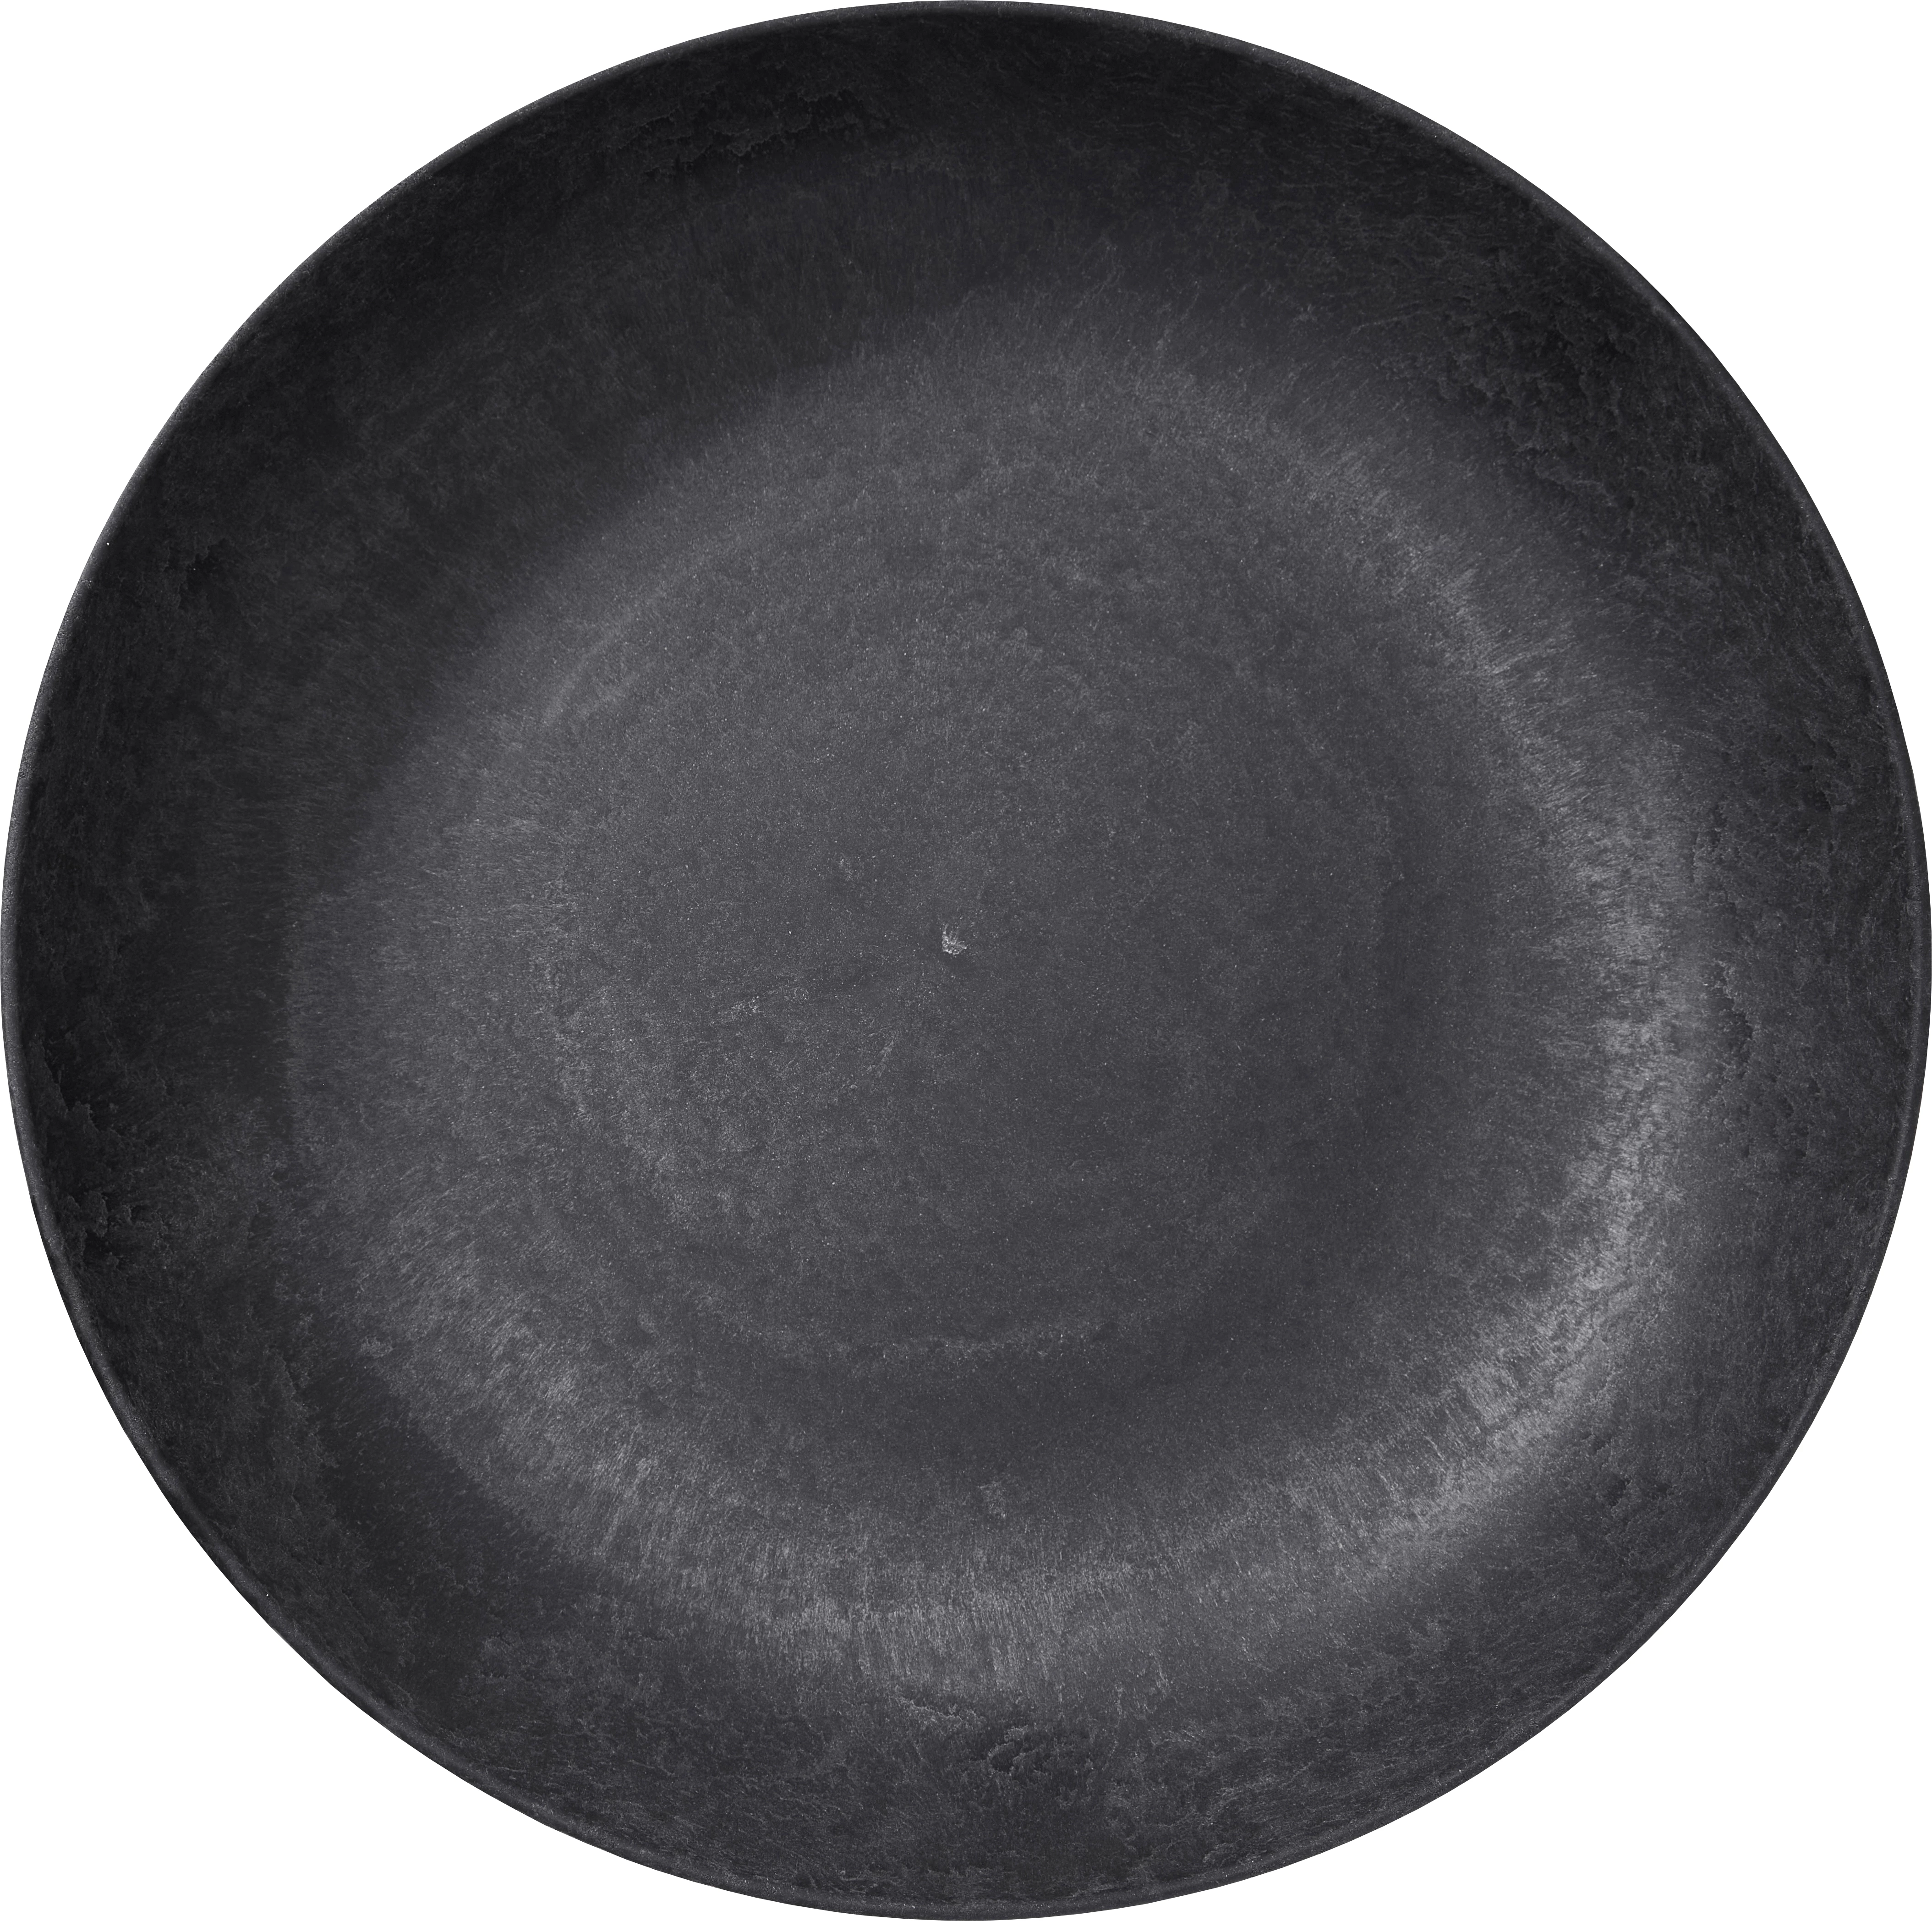 Luups skål, sort, 600 cl, ø39 cm